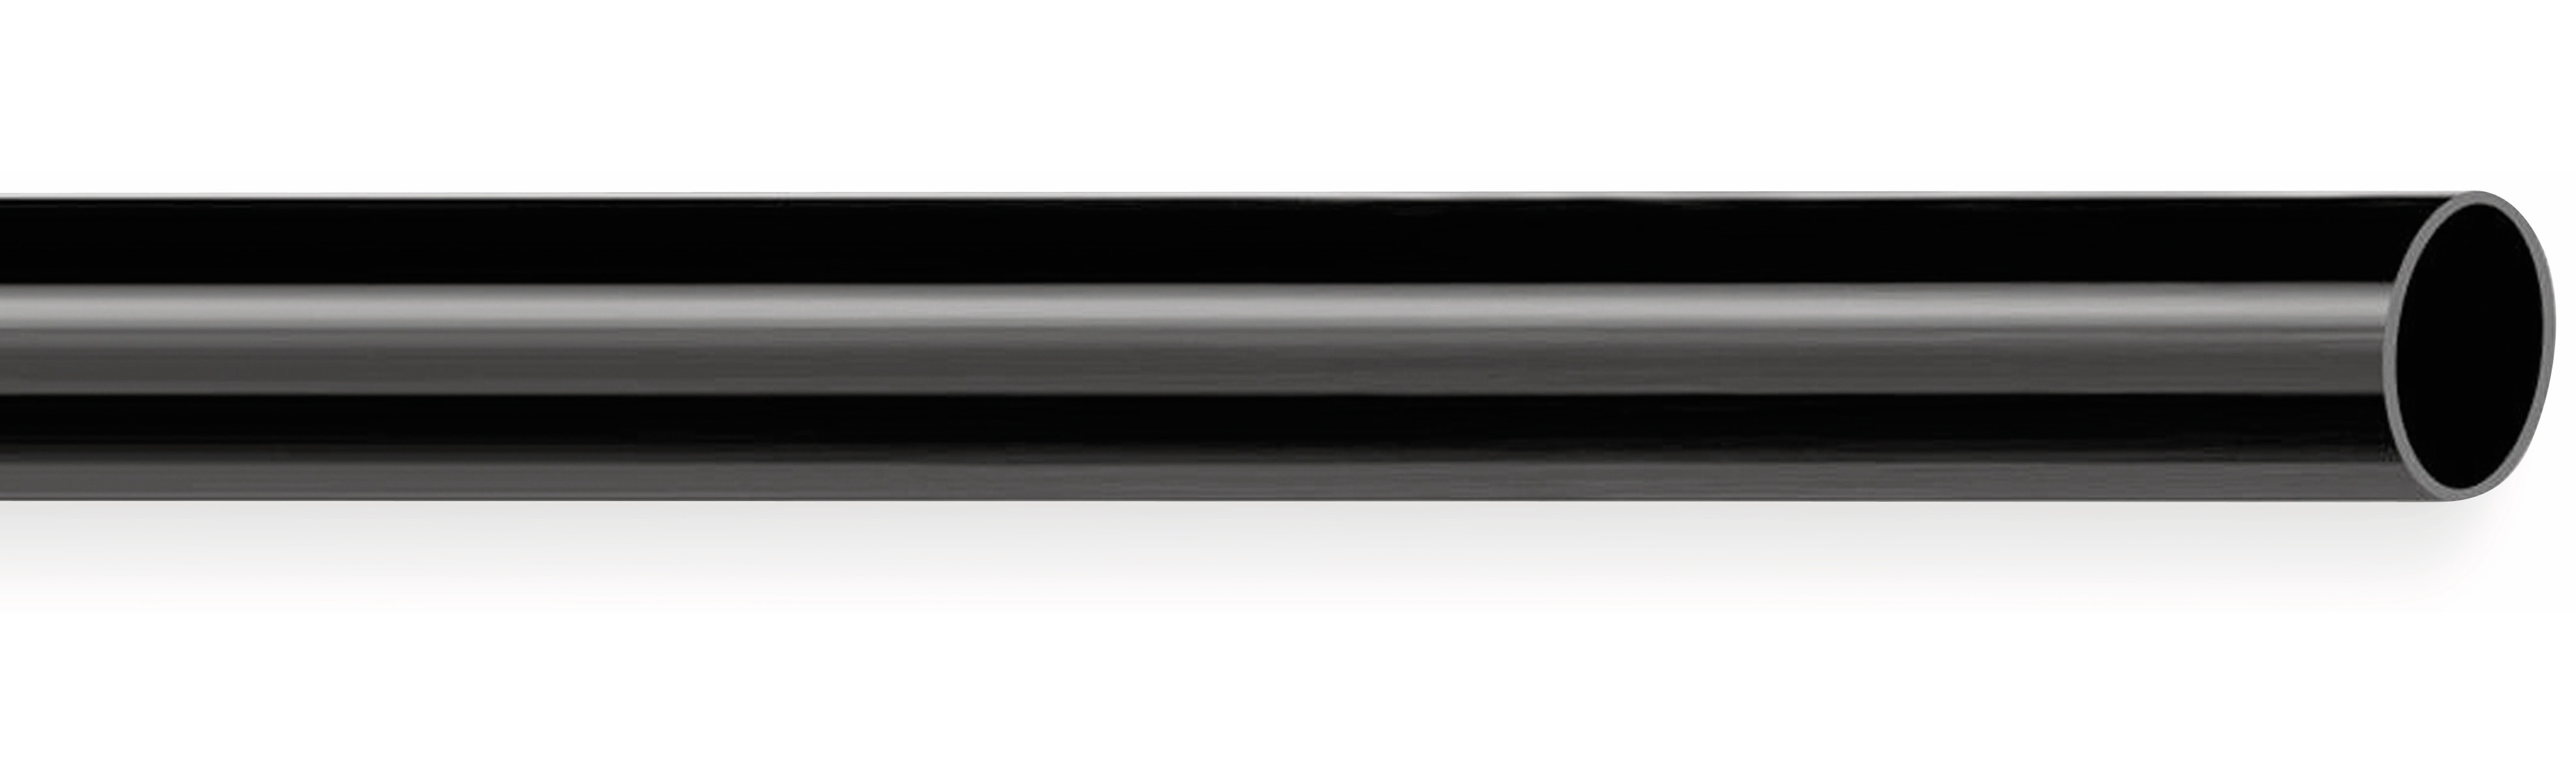 PVC Isolierschlauch 10x0,5 mm, schwarz, 10m